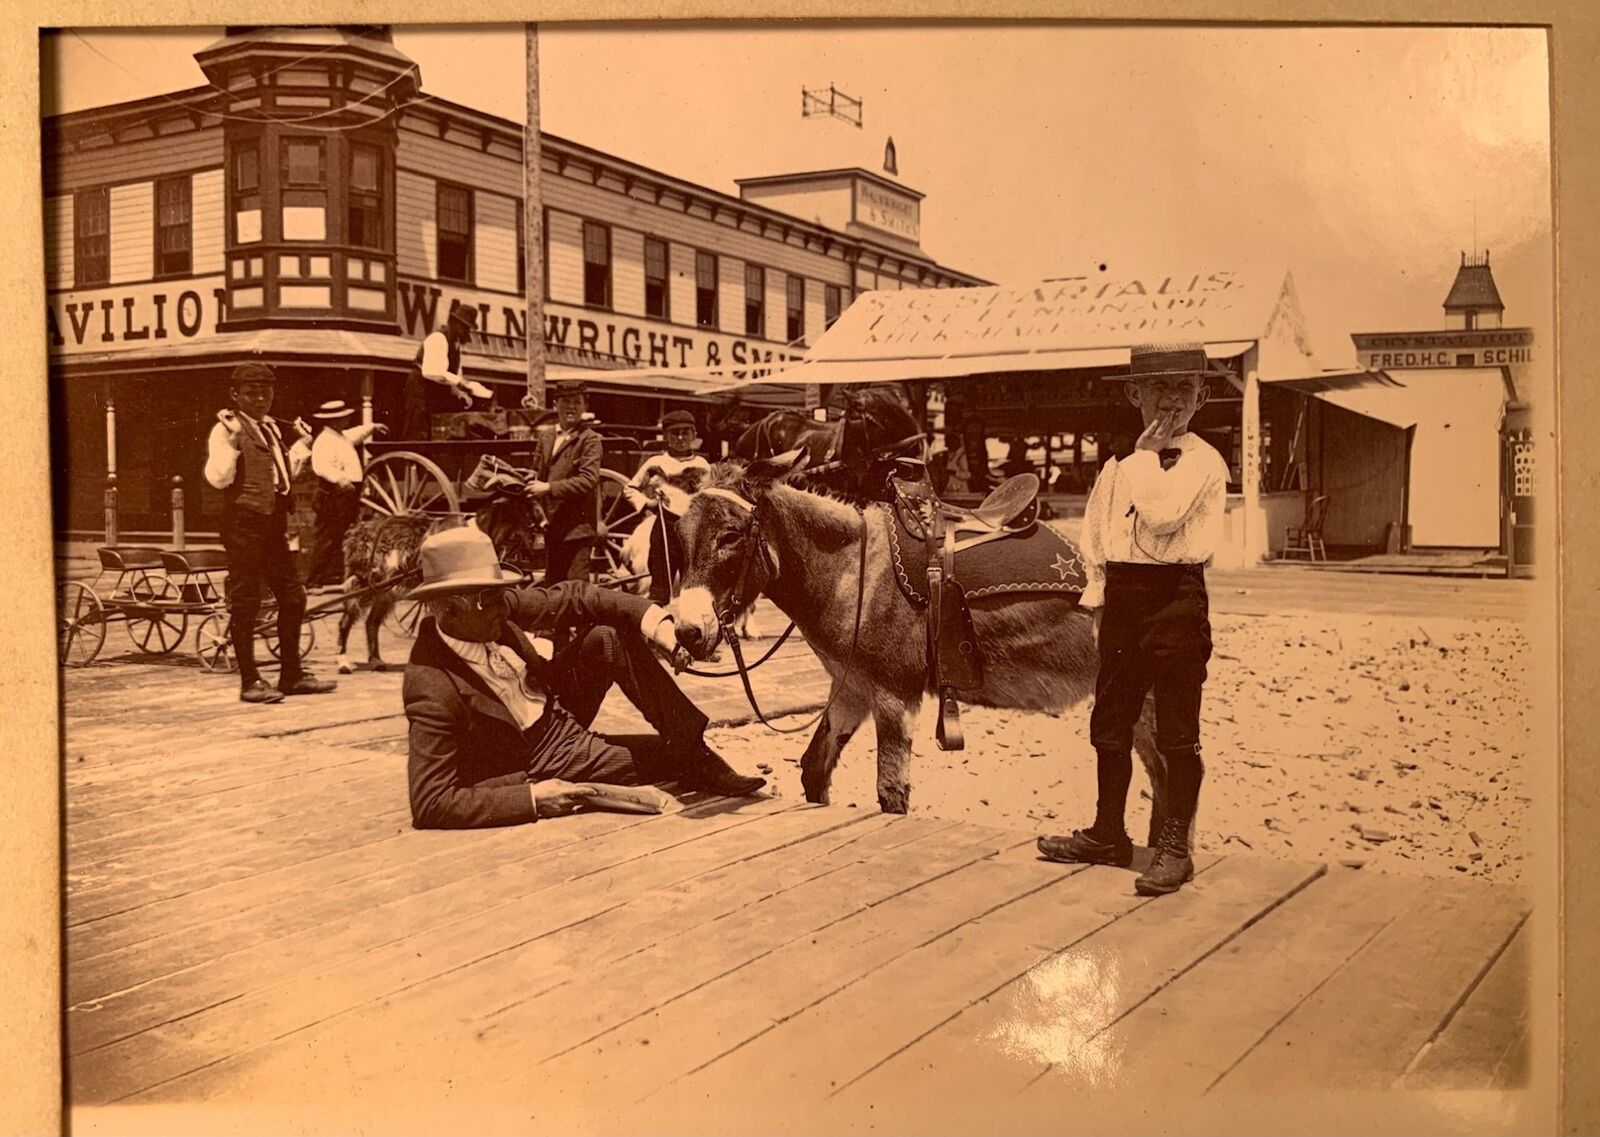 Coney Island/Rockaway Beach Photo Album 20 Images Circa 1910